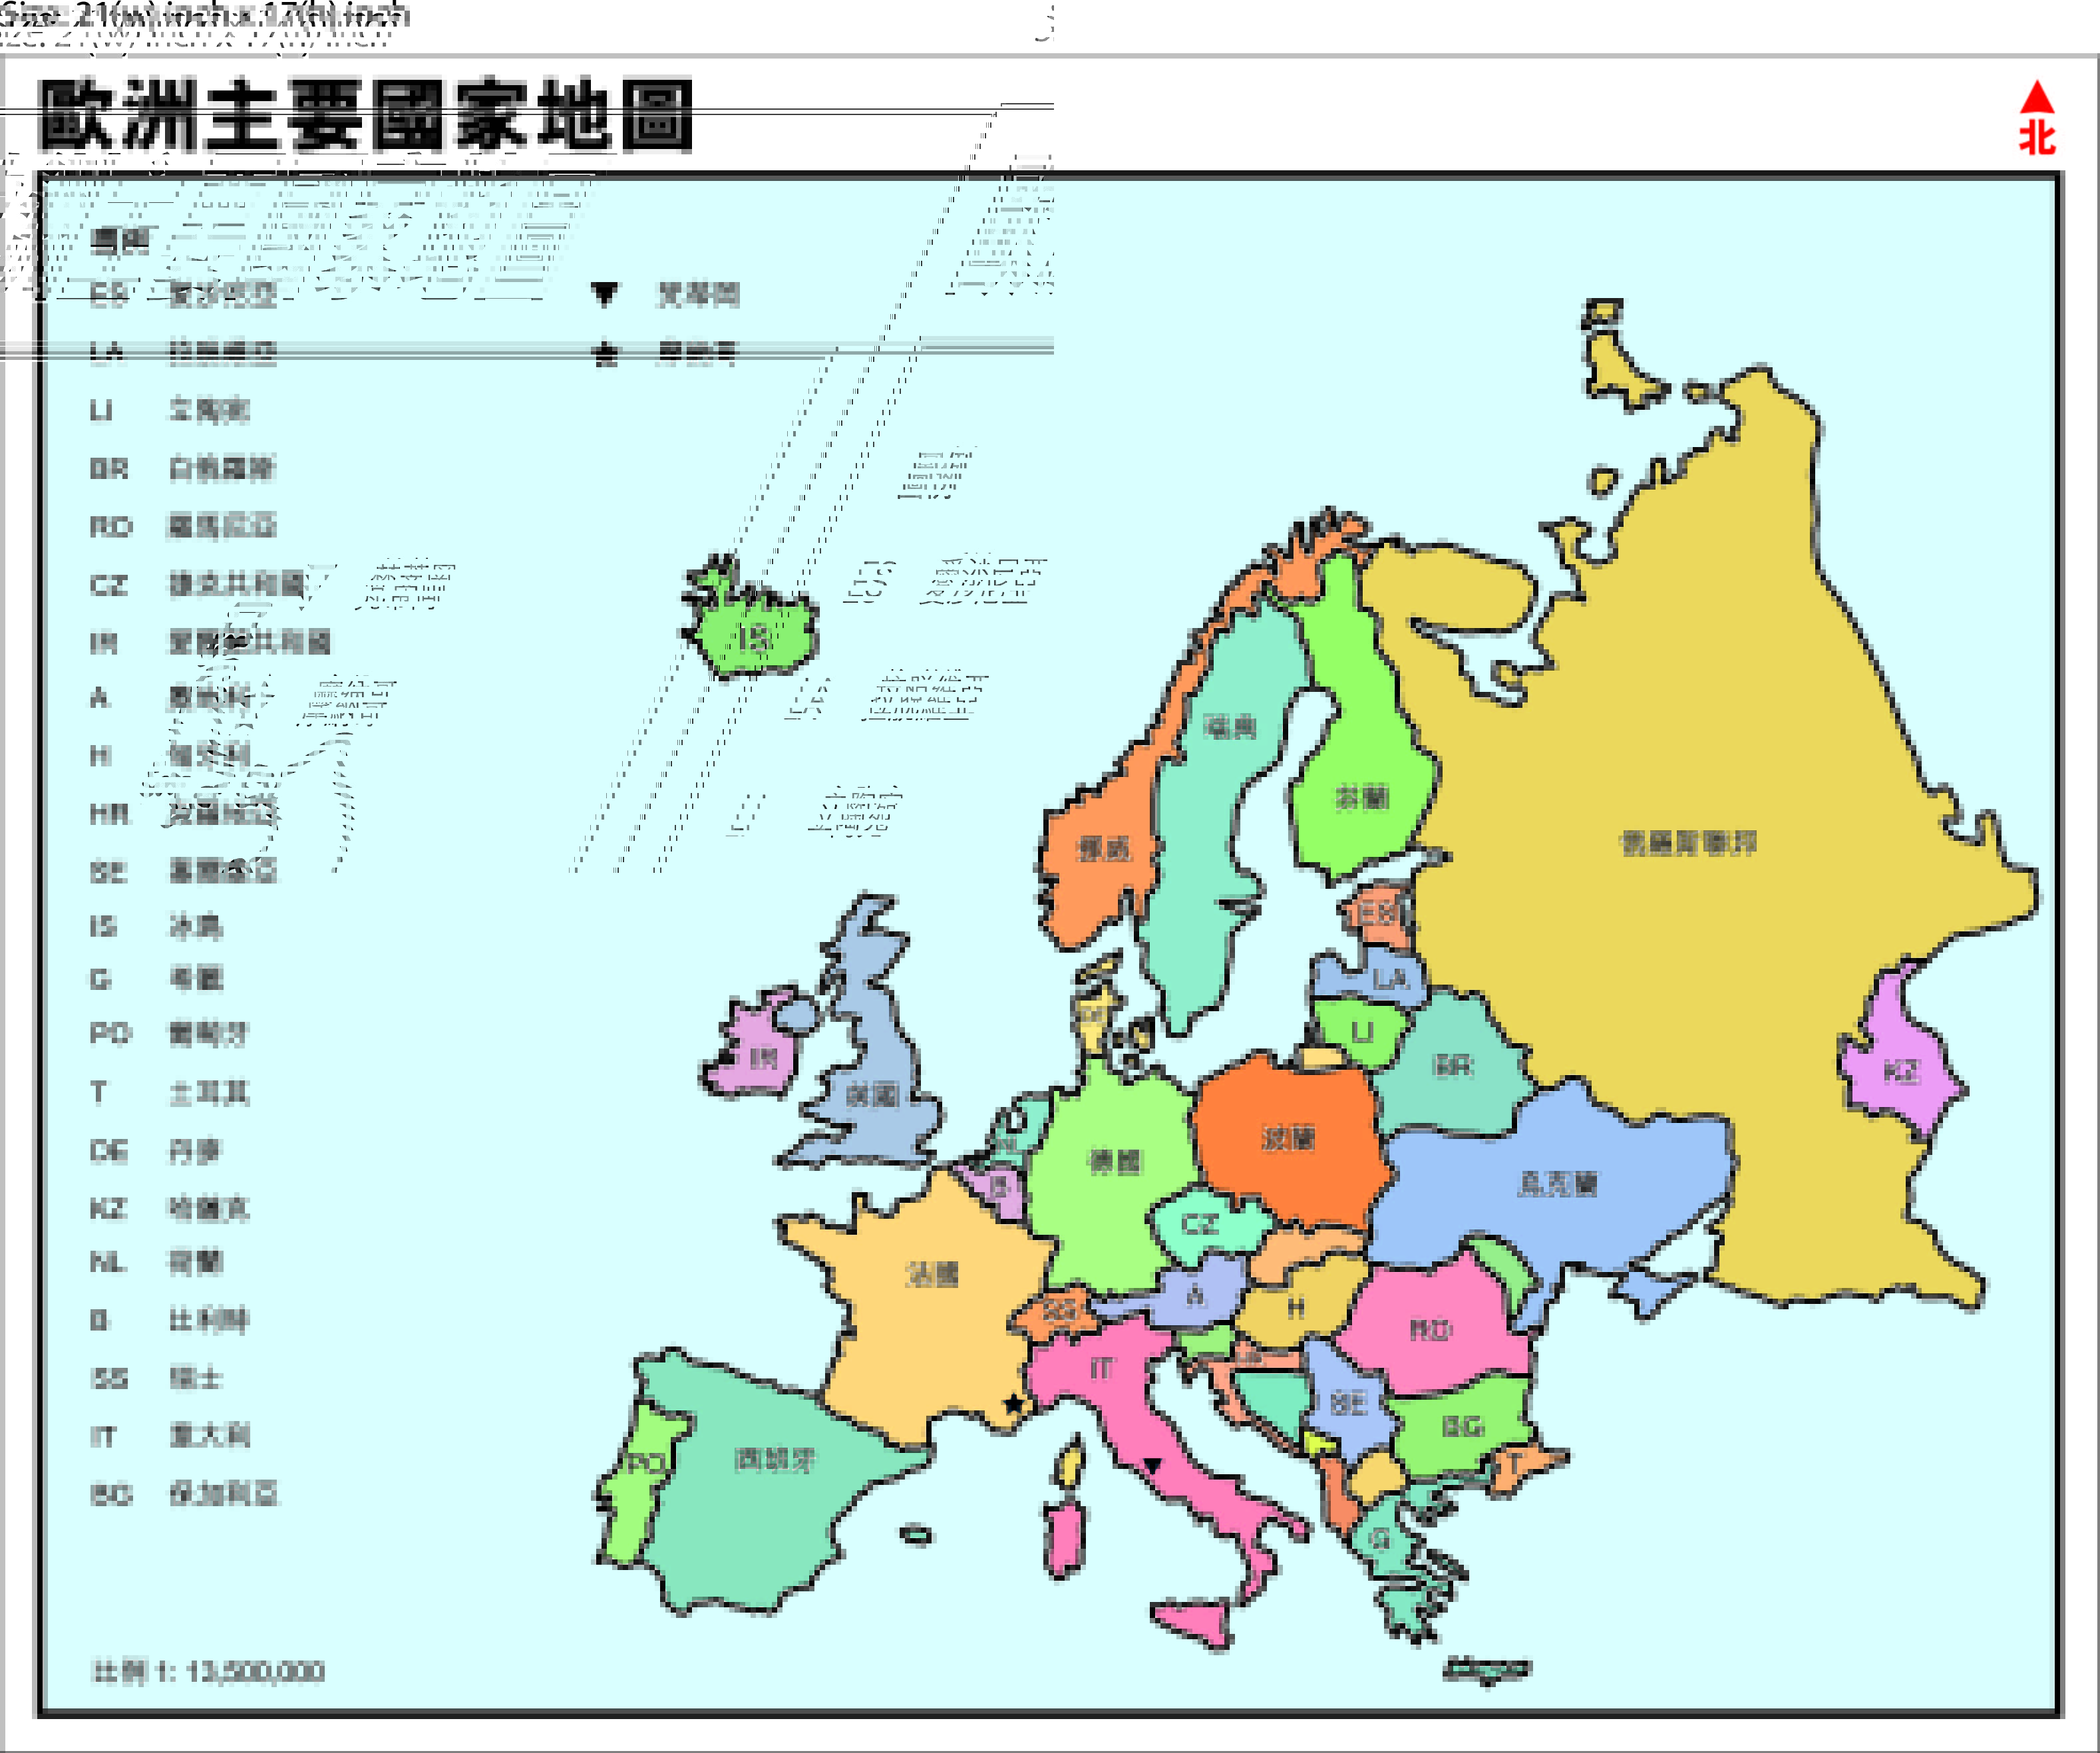 歐洲主要國家地圖2016年版